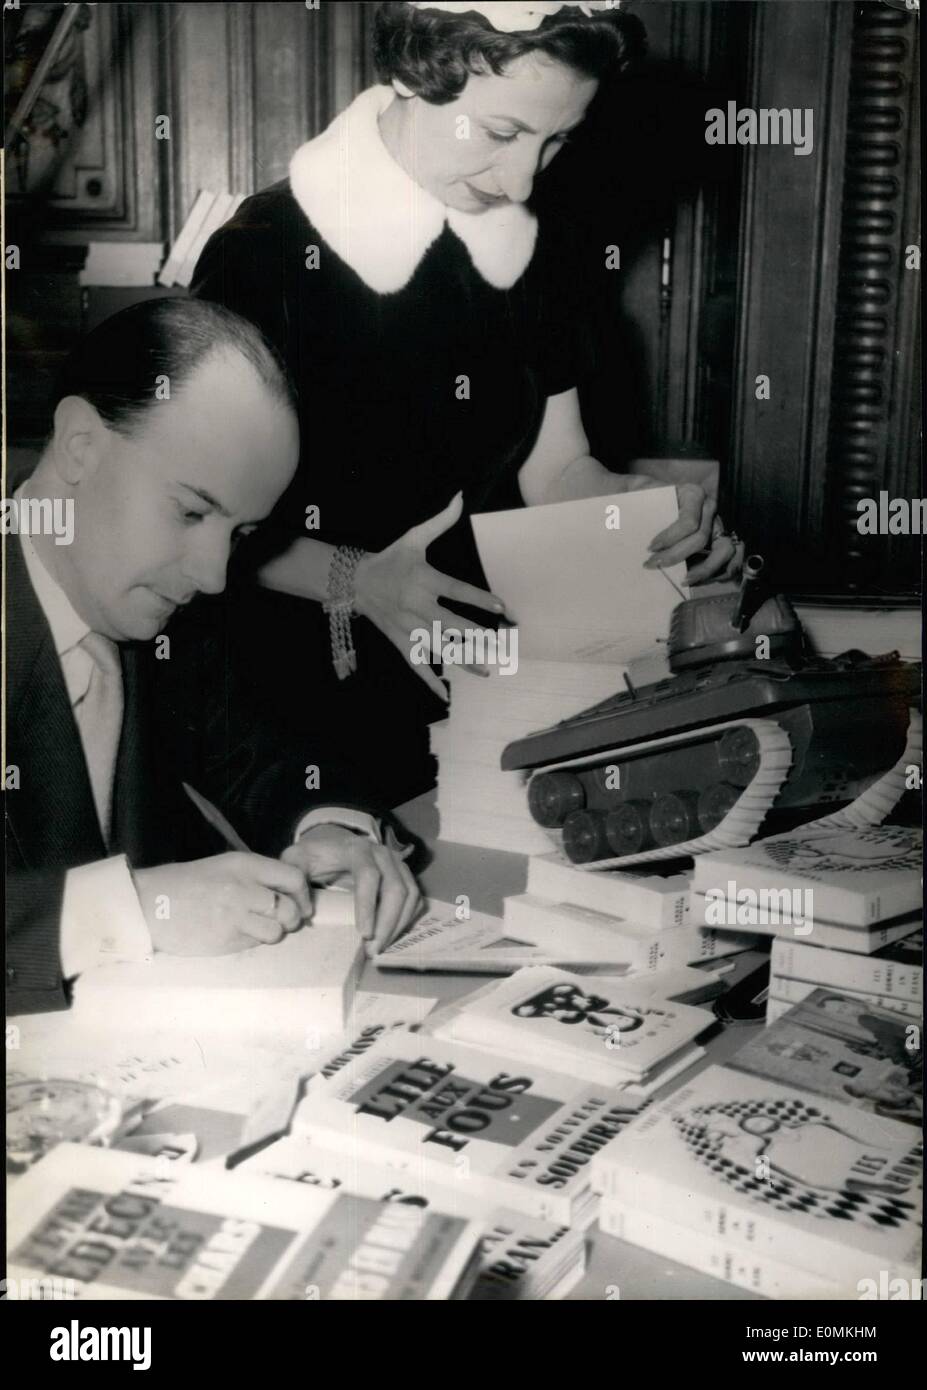 11 novembre 1955 - UN Doctor-Writers' livres vendus en vente de charité : la vente de charité annuelle les livres écrits par des médecins-auteurs a eu lieu dans les salons de la Sorbonne hier. Photo montre M. Soubrian, auteur du célèbre livre "Les hommes en blanc'' des autographes l'un de ses livres. Banque D'Images